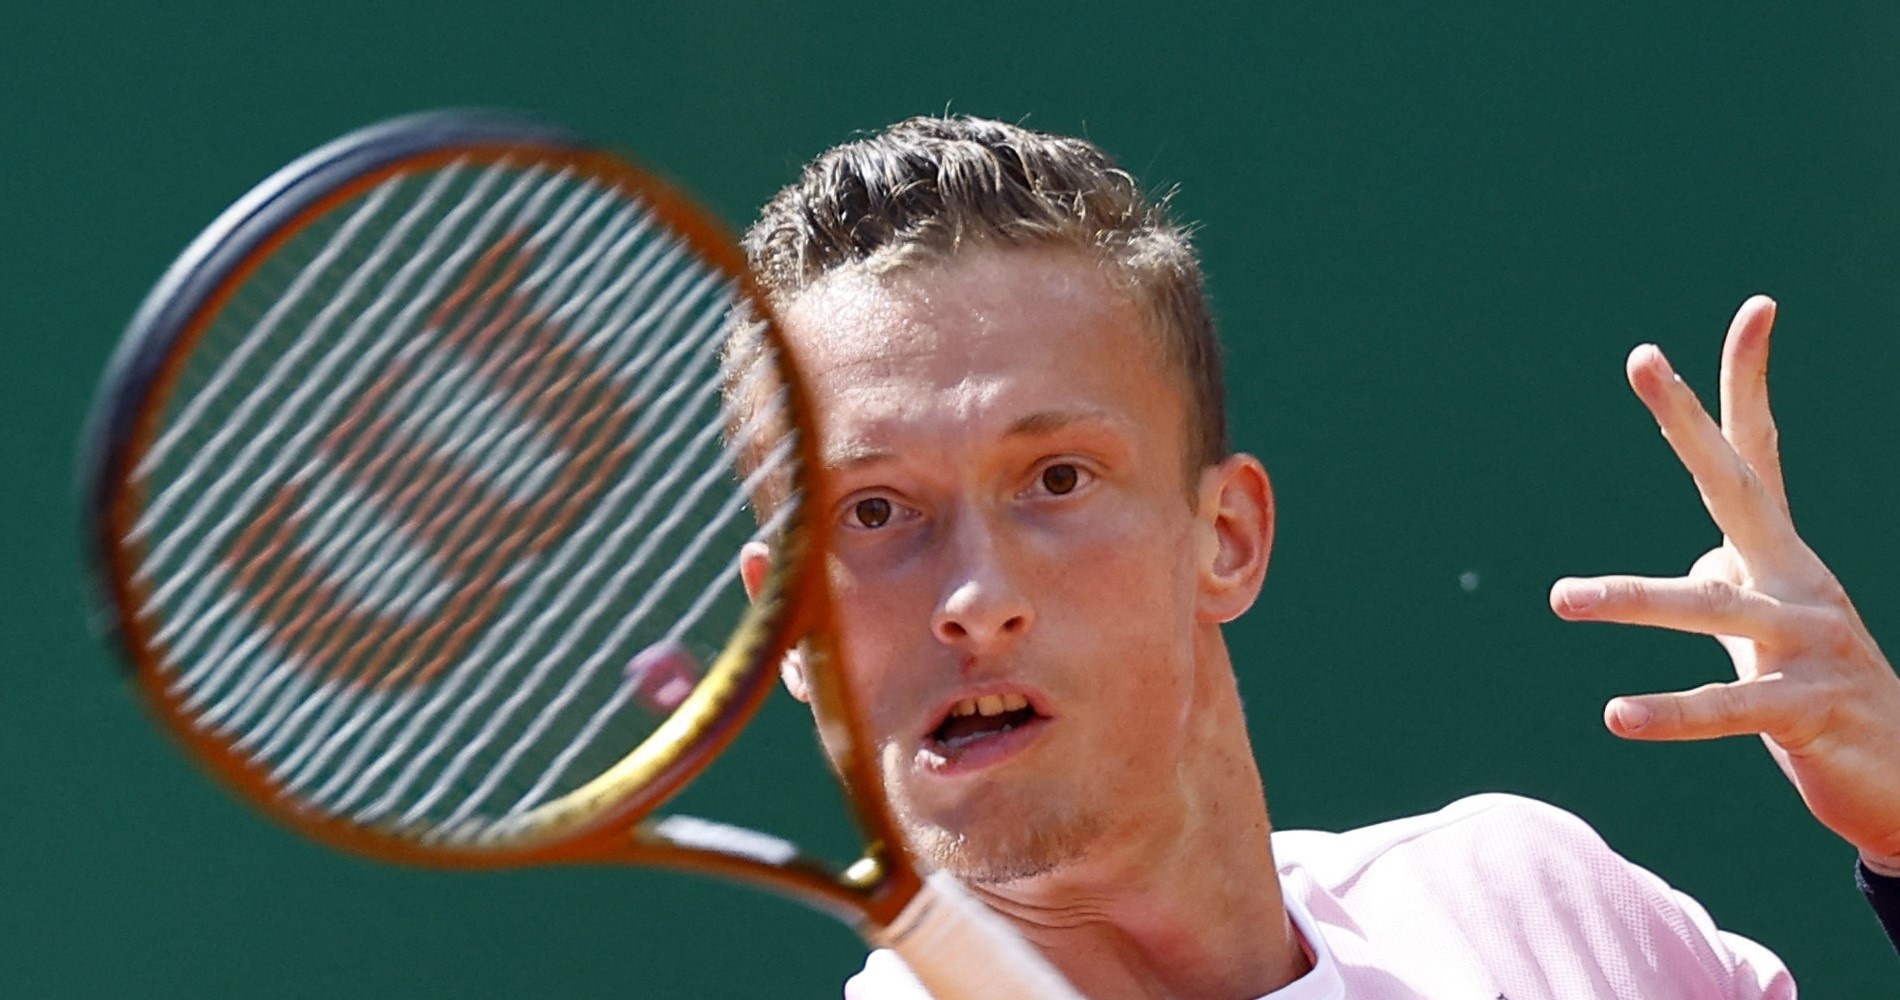 Tennis, ATP – Wimbledon 2023: Lehecka defeats Ofner - Tennis Majors